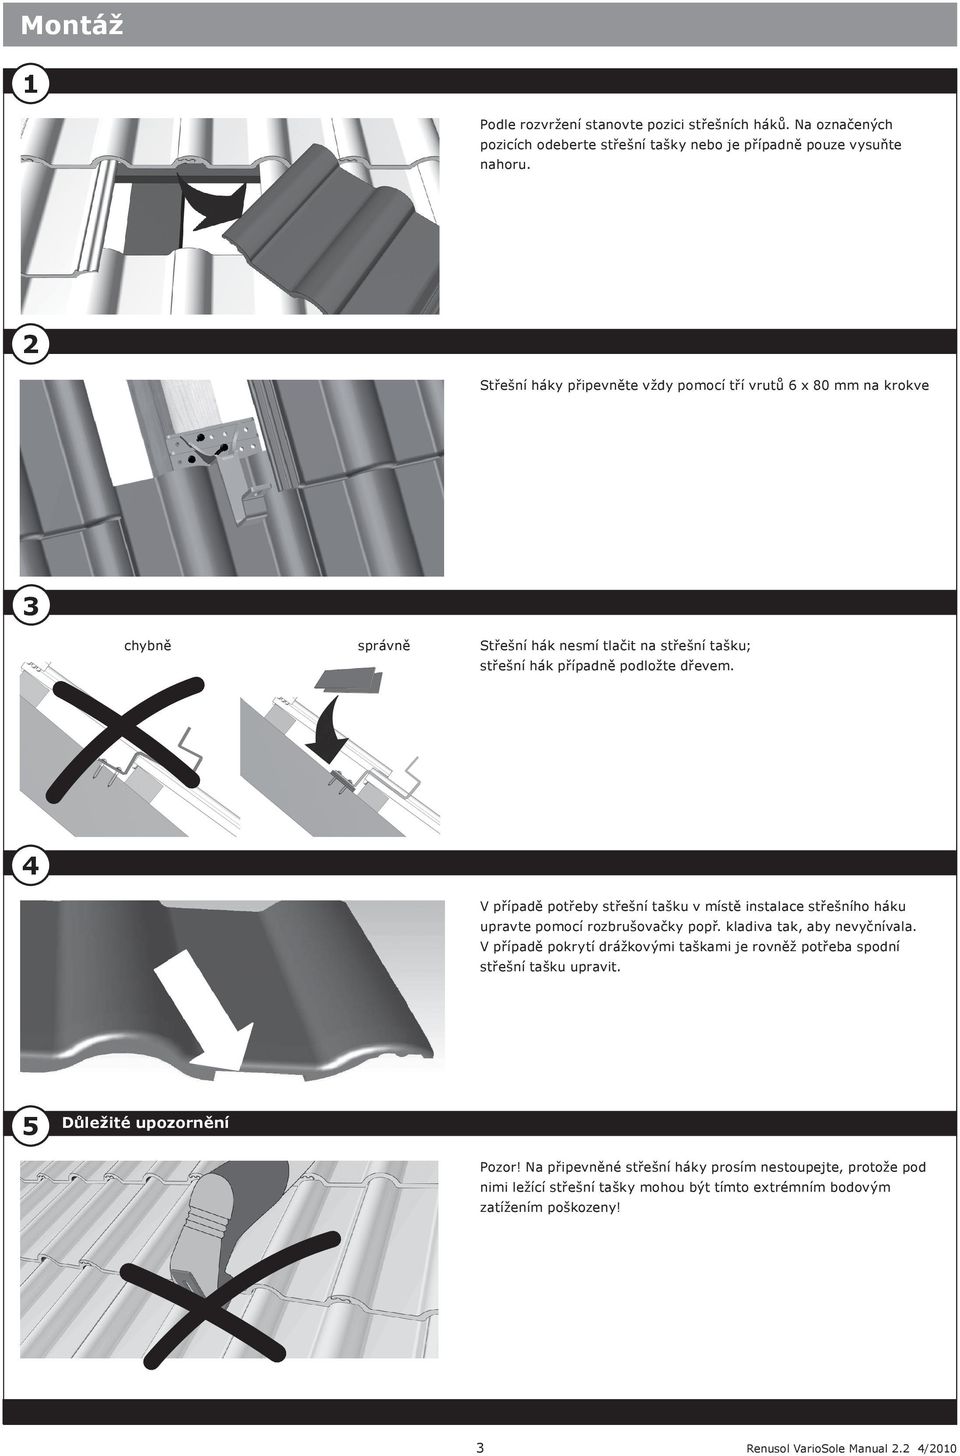 4 V případě potřeby střešní tašku v místě instalace střešního háku upravte pomocí rozbrušovačky popř. kladiva tak, aby nevyčnívala.